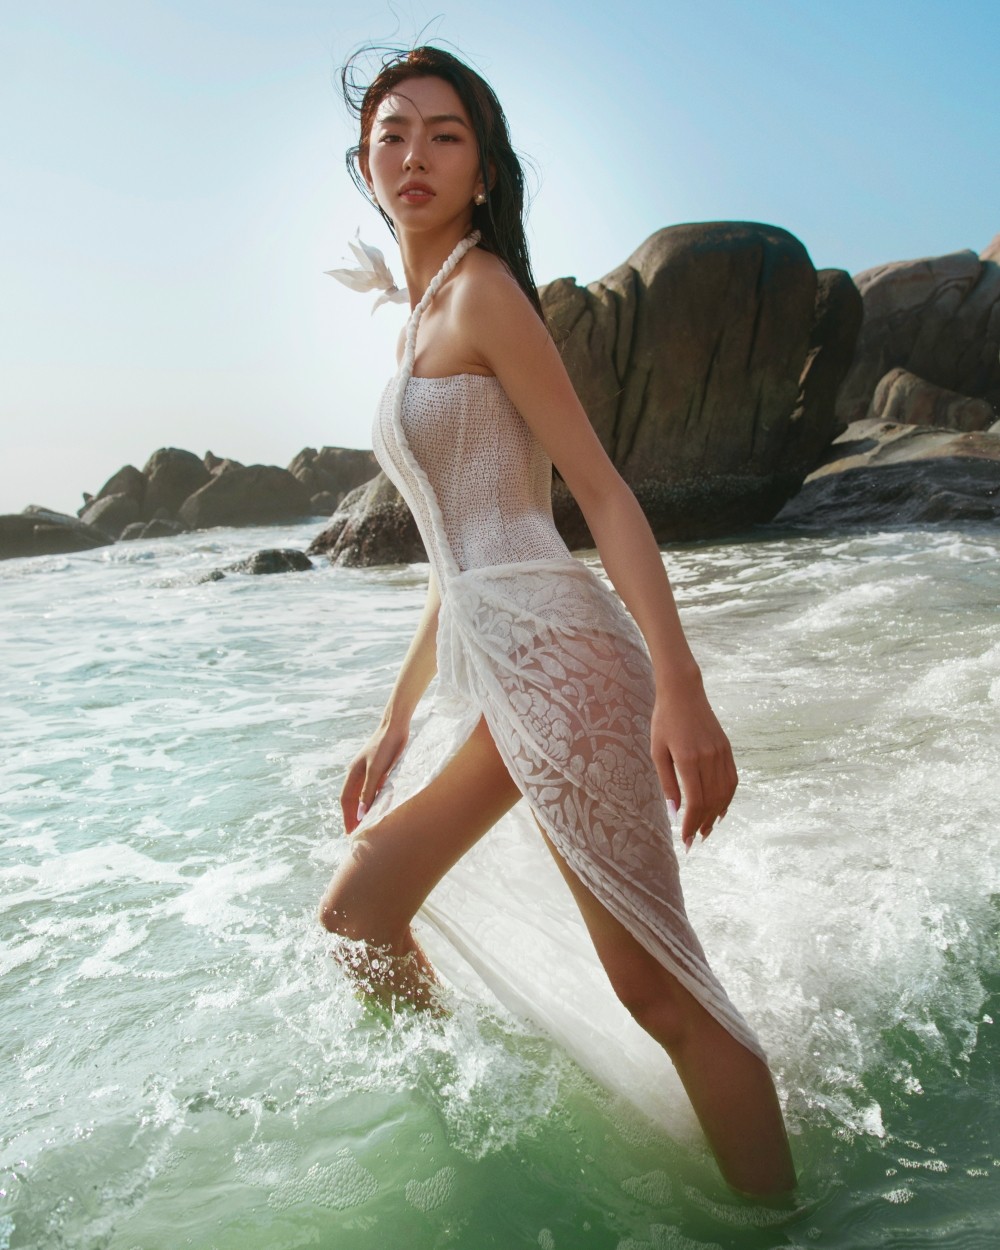 Ngắm Hoa hậu Thùy Tiên trong bộ ảnh thời trang đẹp mãn nhãn bên bờ biển ảnh 6